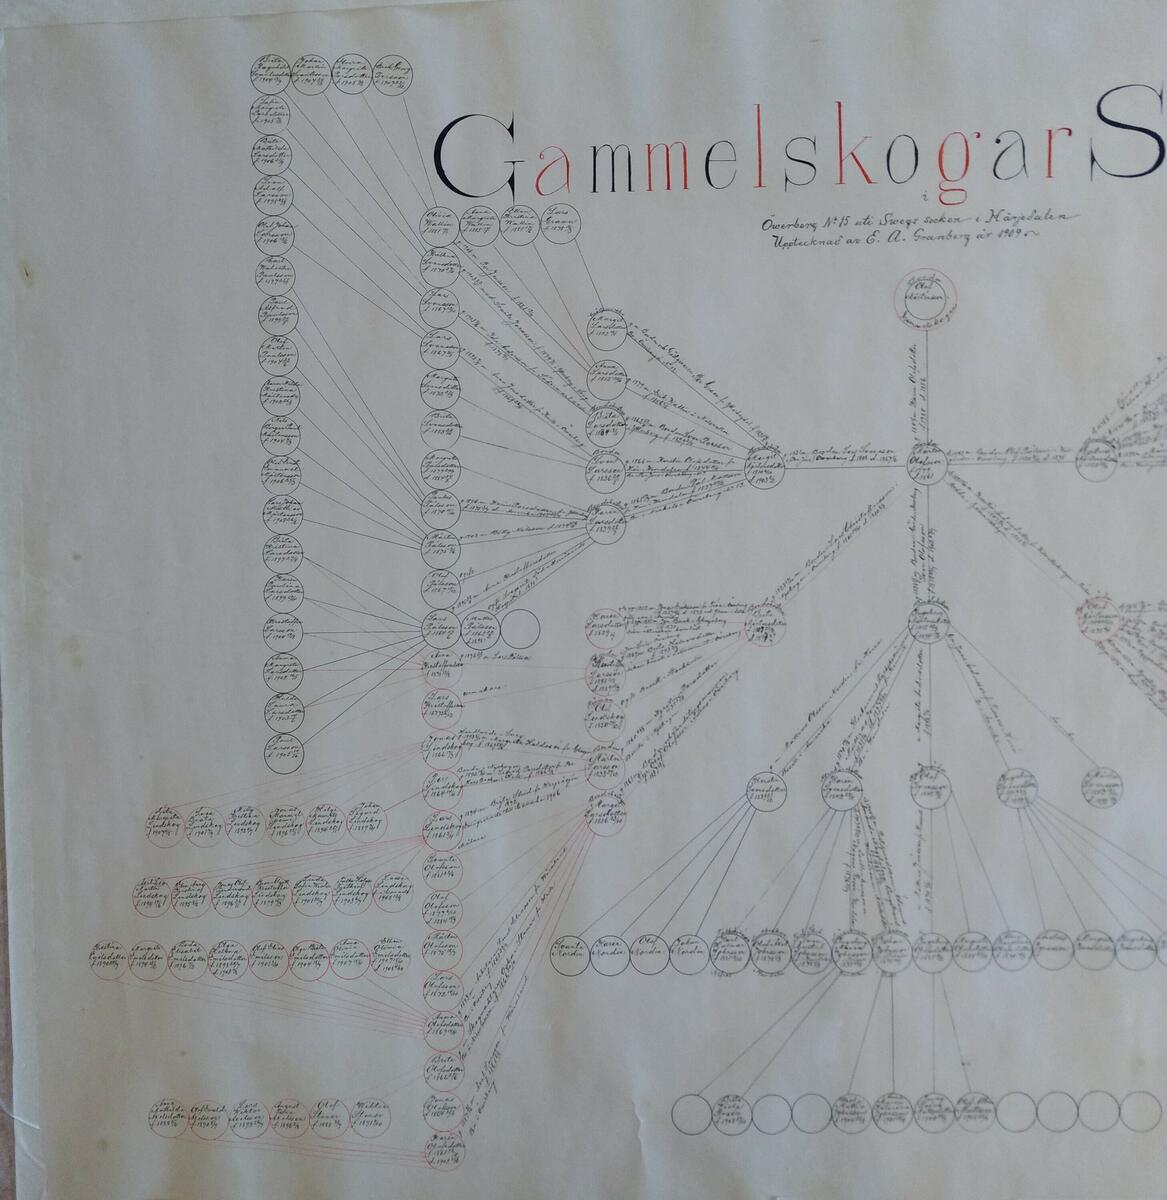 Släkttavla över Gammelskogar släkten i Öwerberg N:o 15 uti Swegs socken i Härjedalen. Upptecknad E.A Granberg år 1909.